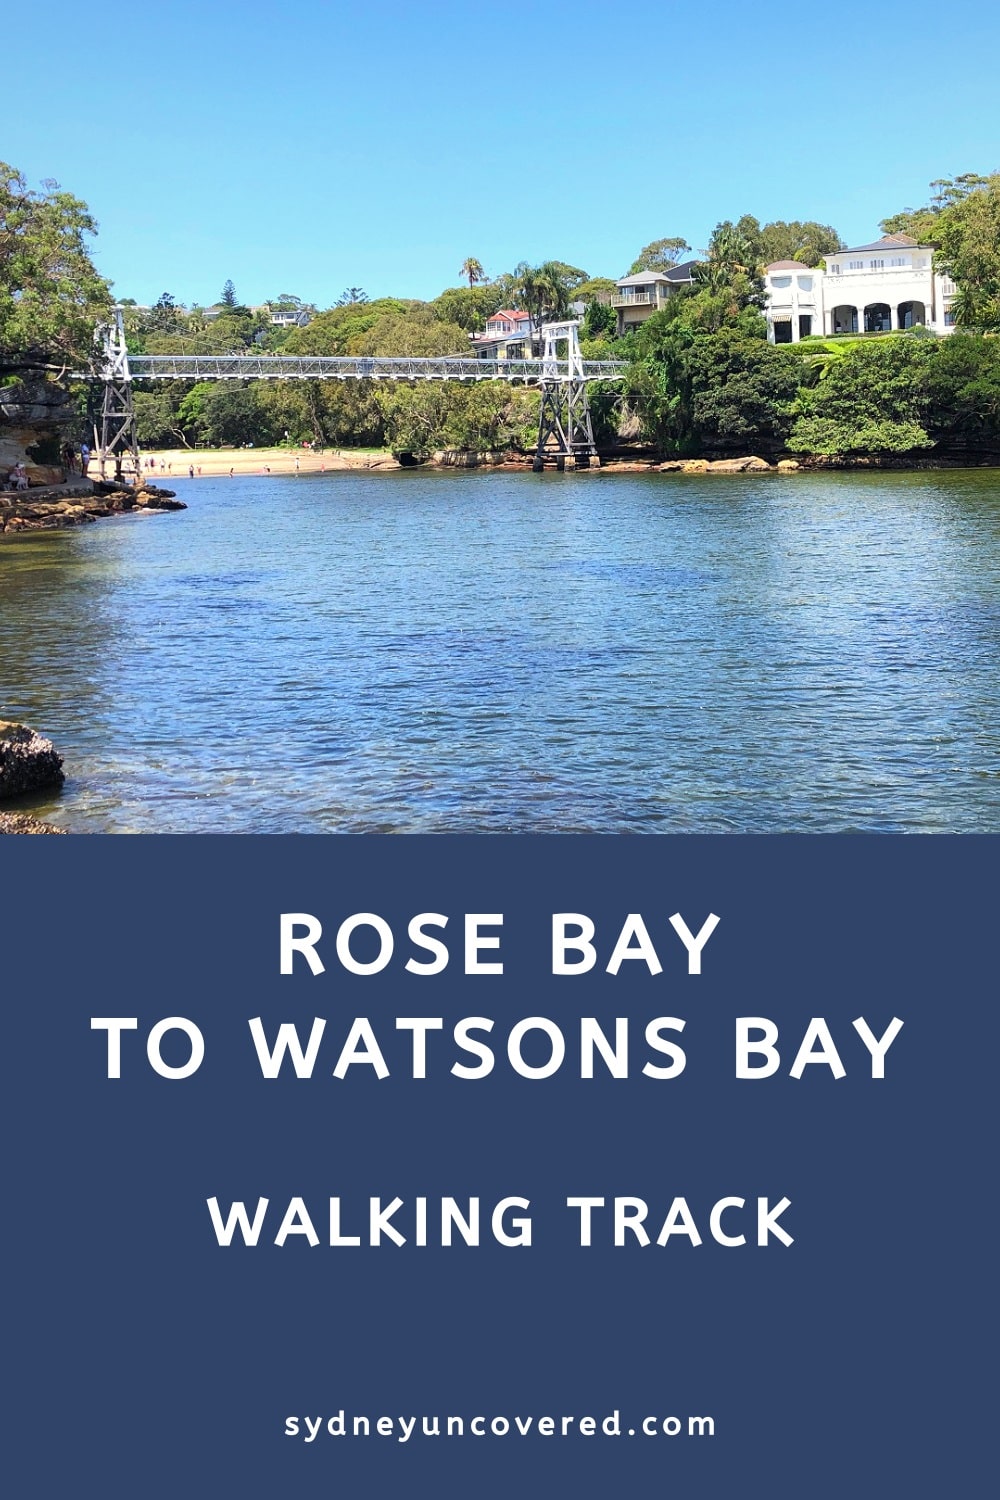 Rose Bay to Watsons Bay walking track